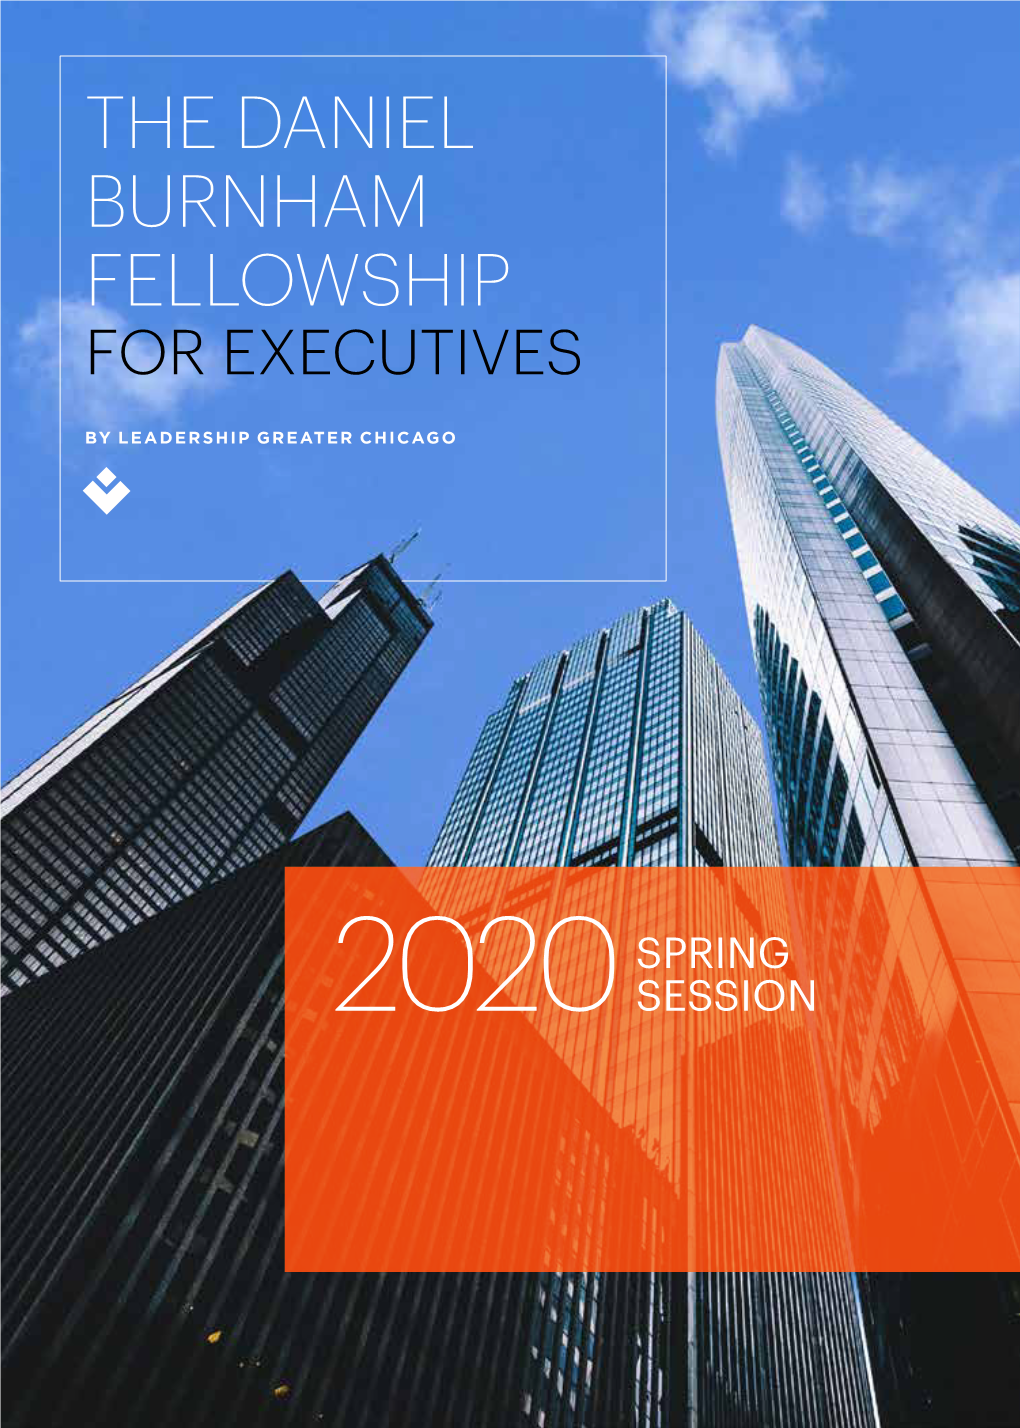 The Daniel Burnham Fellowship for Executives